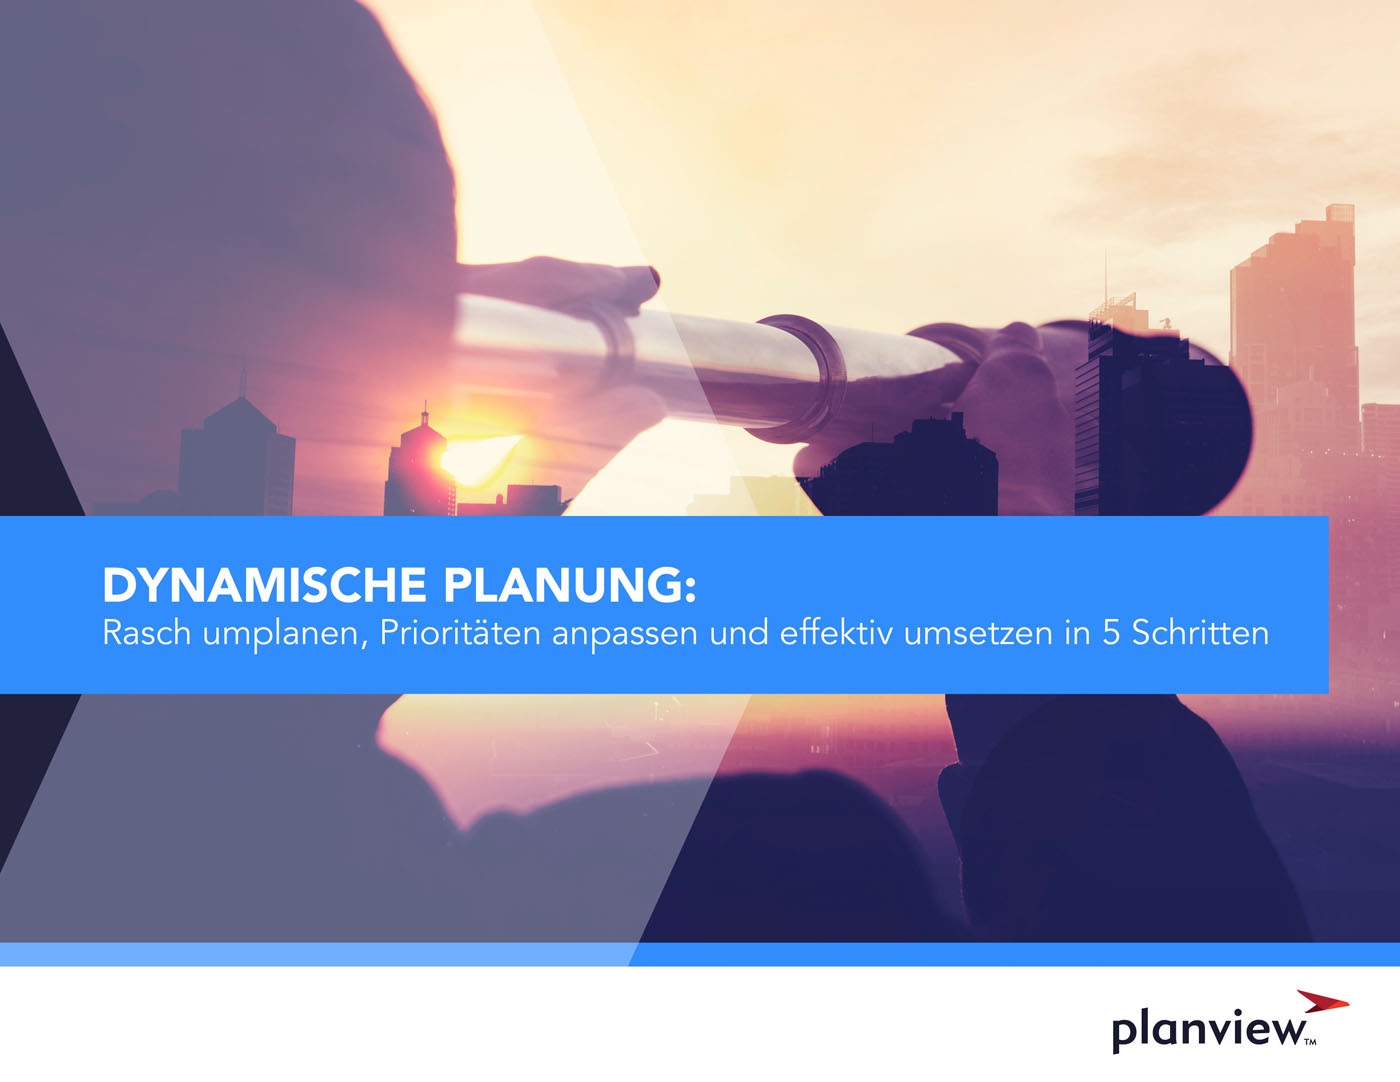 Dynamische Planung: Rasch umplanen, Prioritäten anpassen und effektiv umsetzen in 5 Schritten